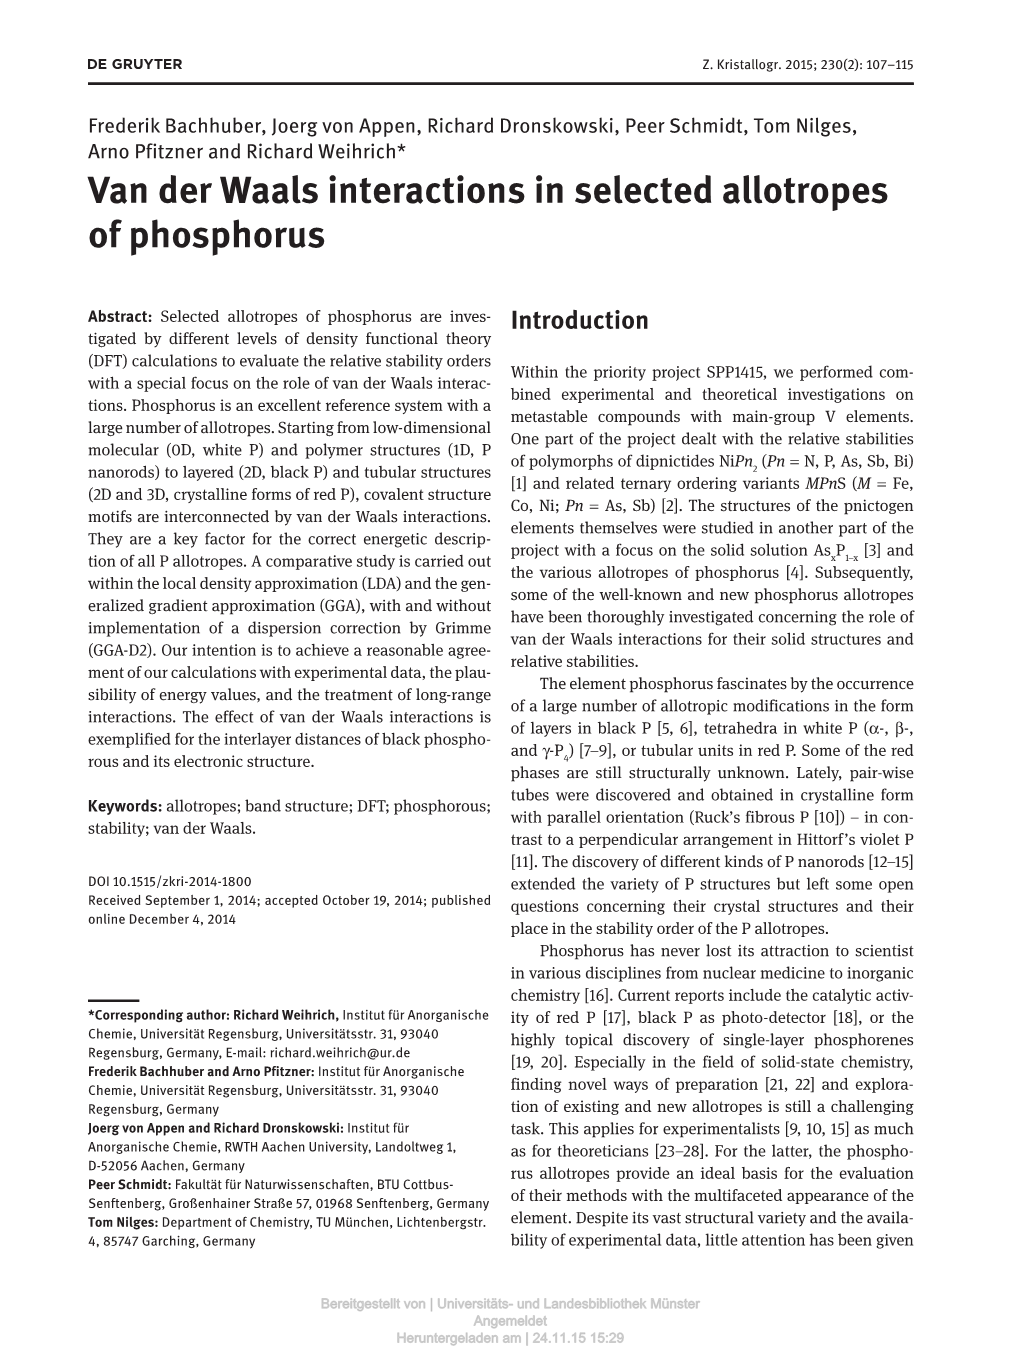 Van Der Waals Interactions in Selected Allotropes of Phosphorus